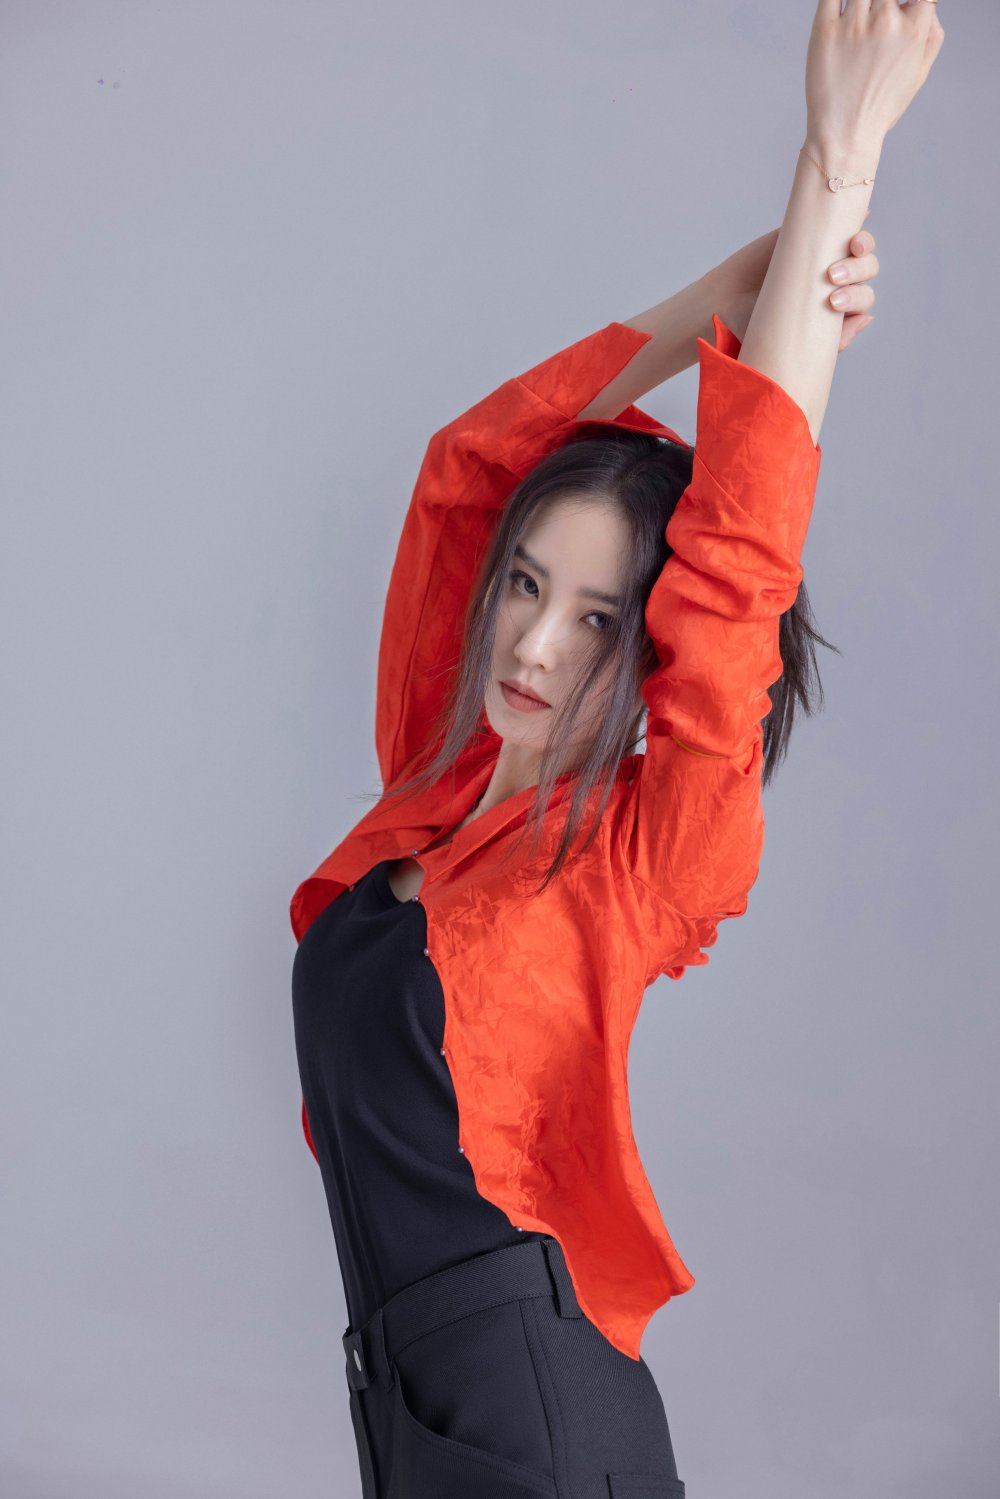 Shi Shi Liu Sexy and Hottest Photos , Latest Pics